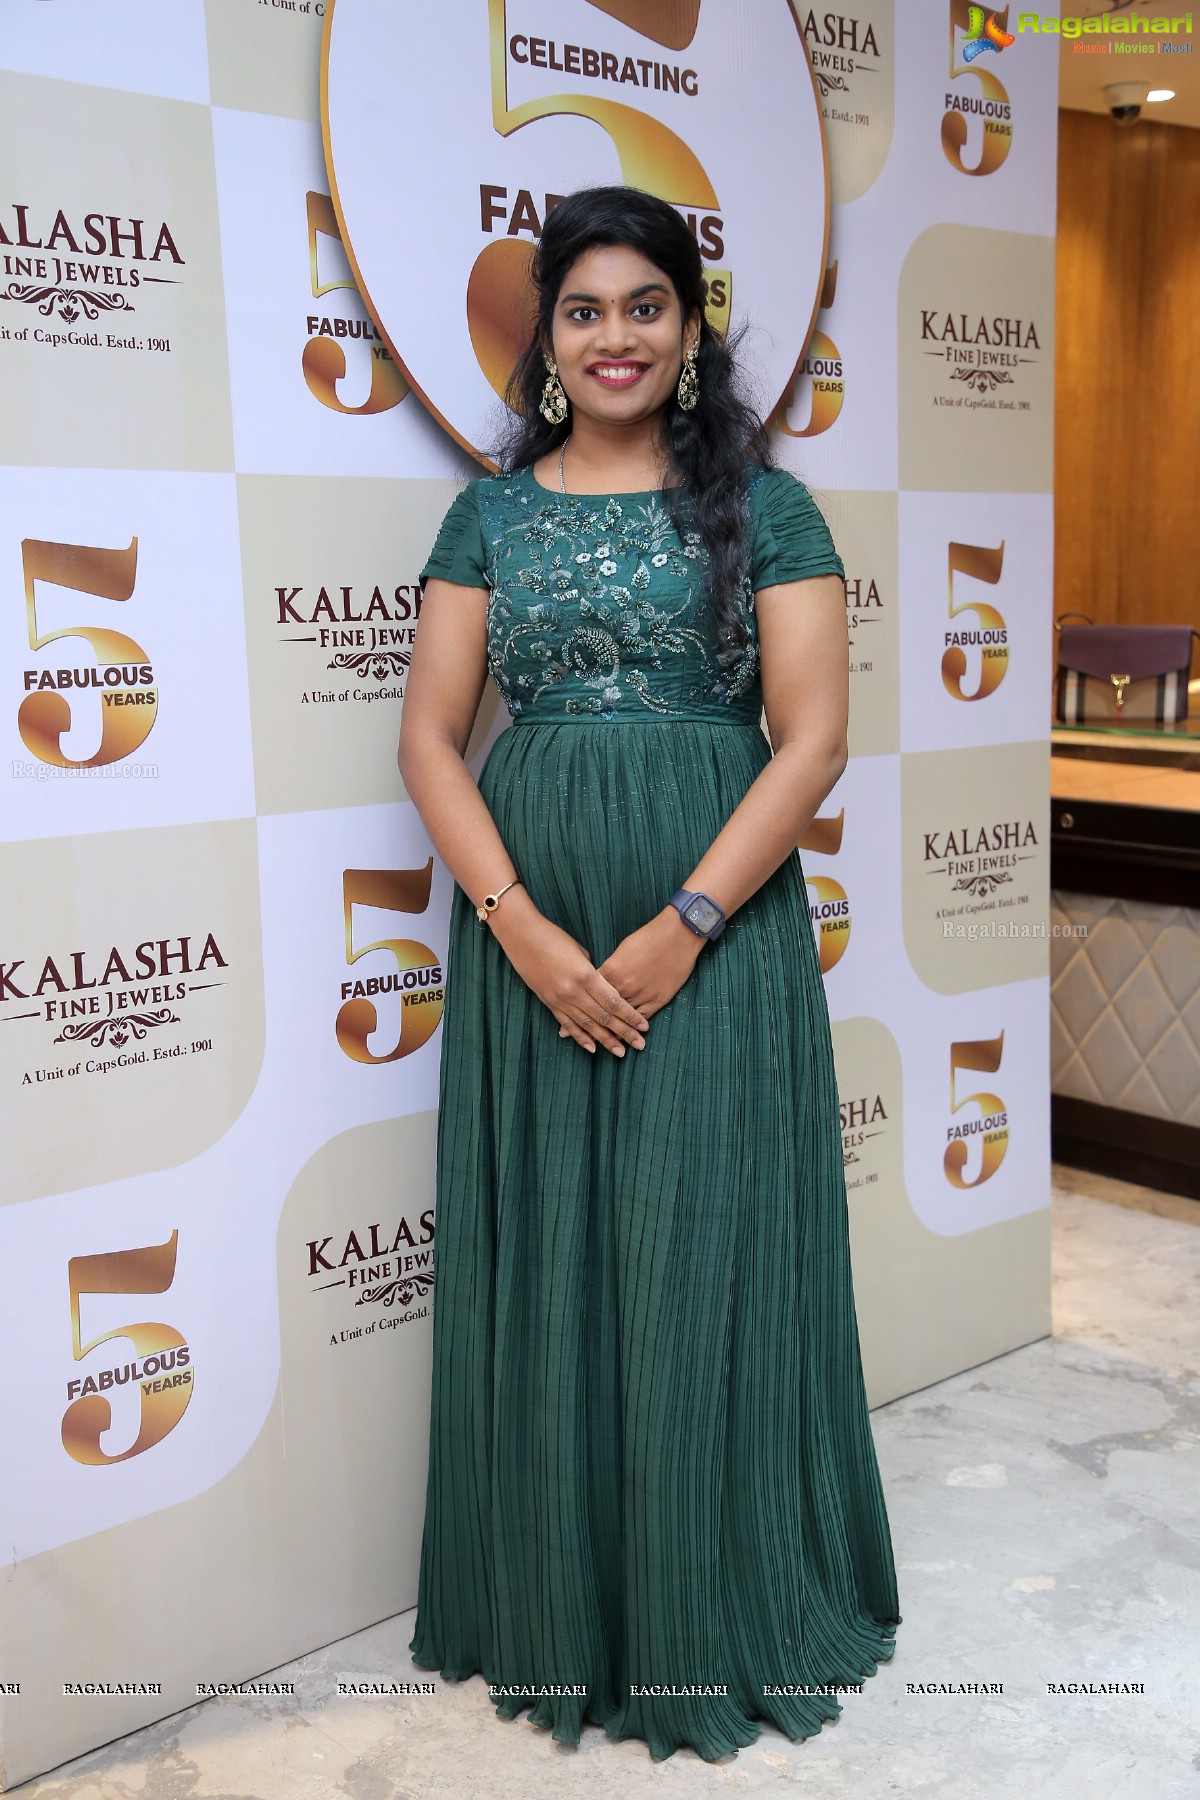 Kalasha Fine Jewels Celebrates its 5th Anniversary